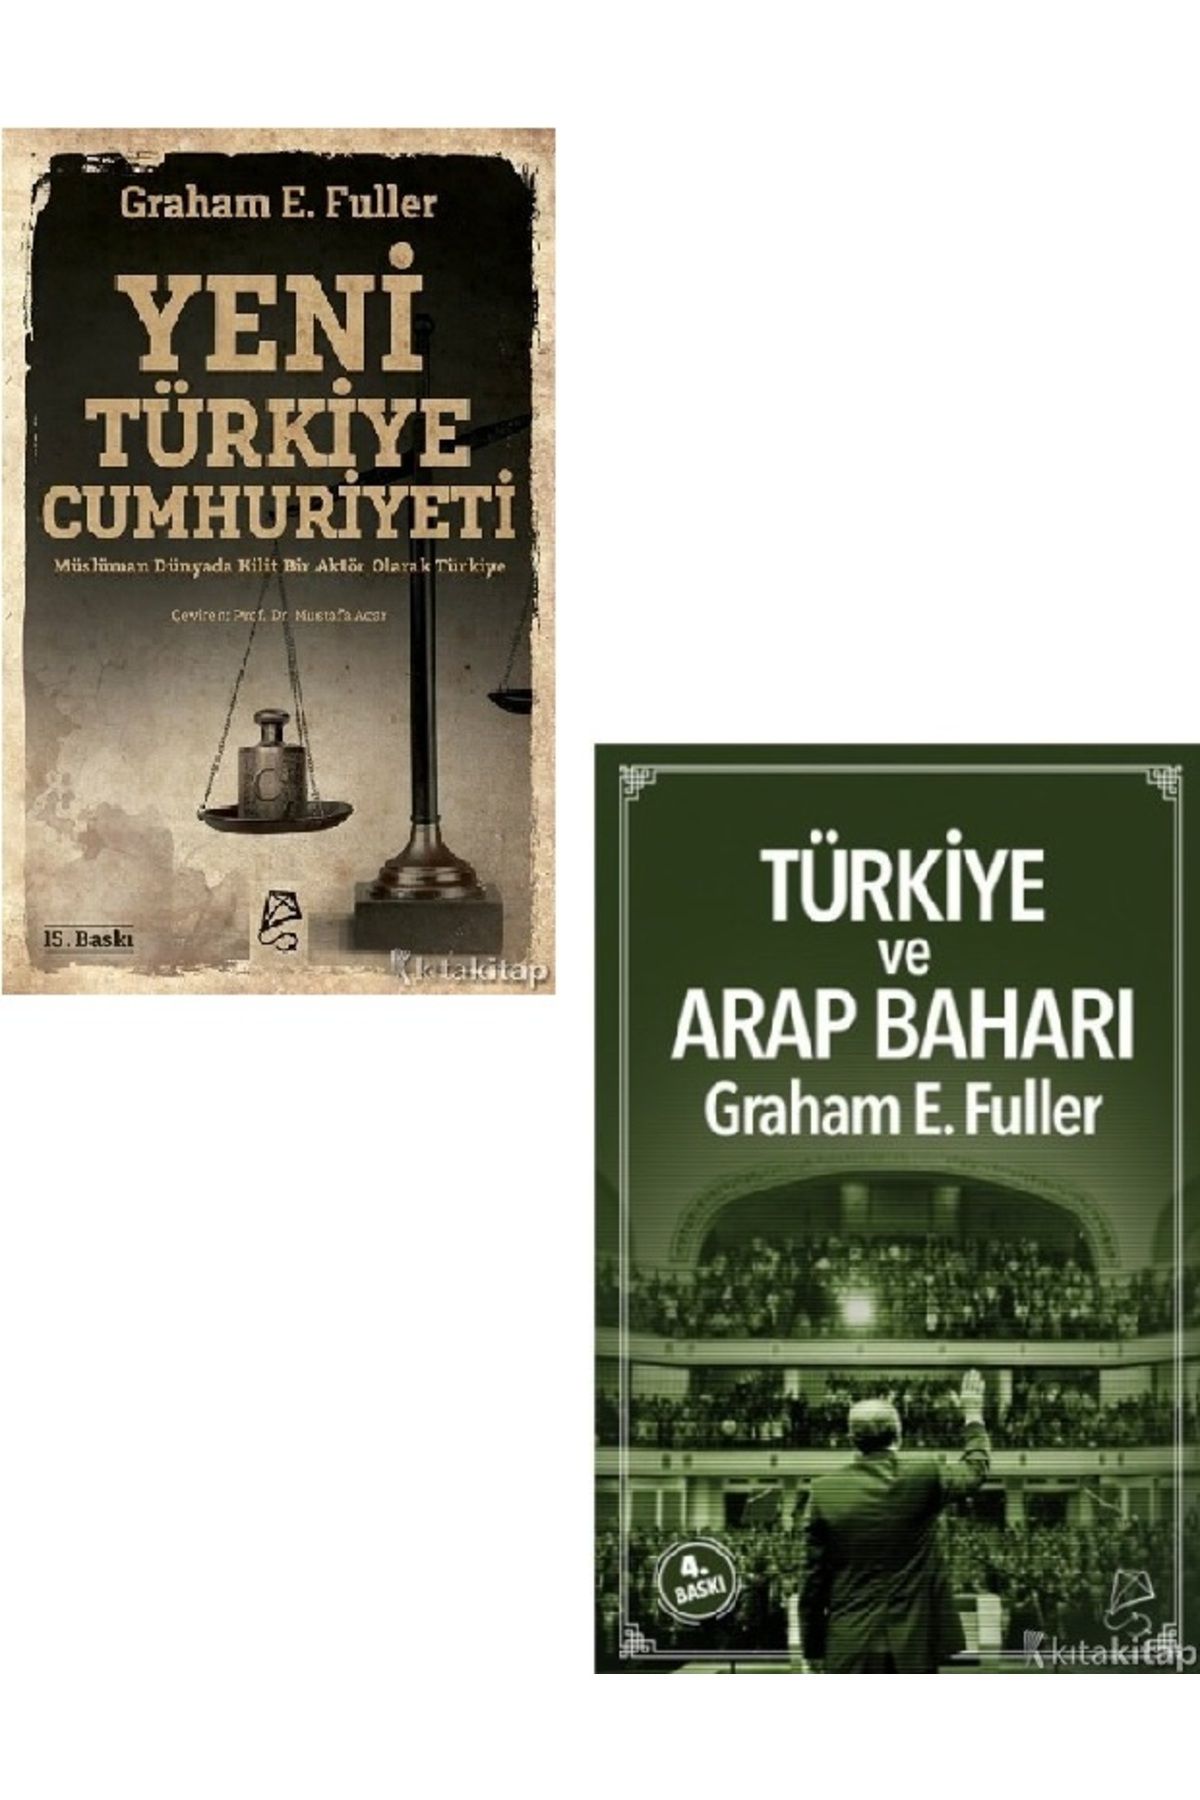 Kronik Kitap Yeni Türkiye Cumhuriyeti - Türkiye ve Arap Baharı - Graham E. Fuller 2 KİTAP SET